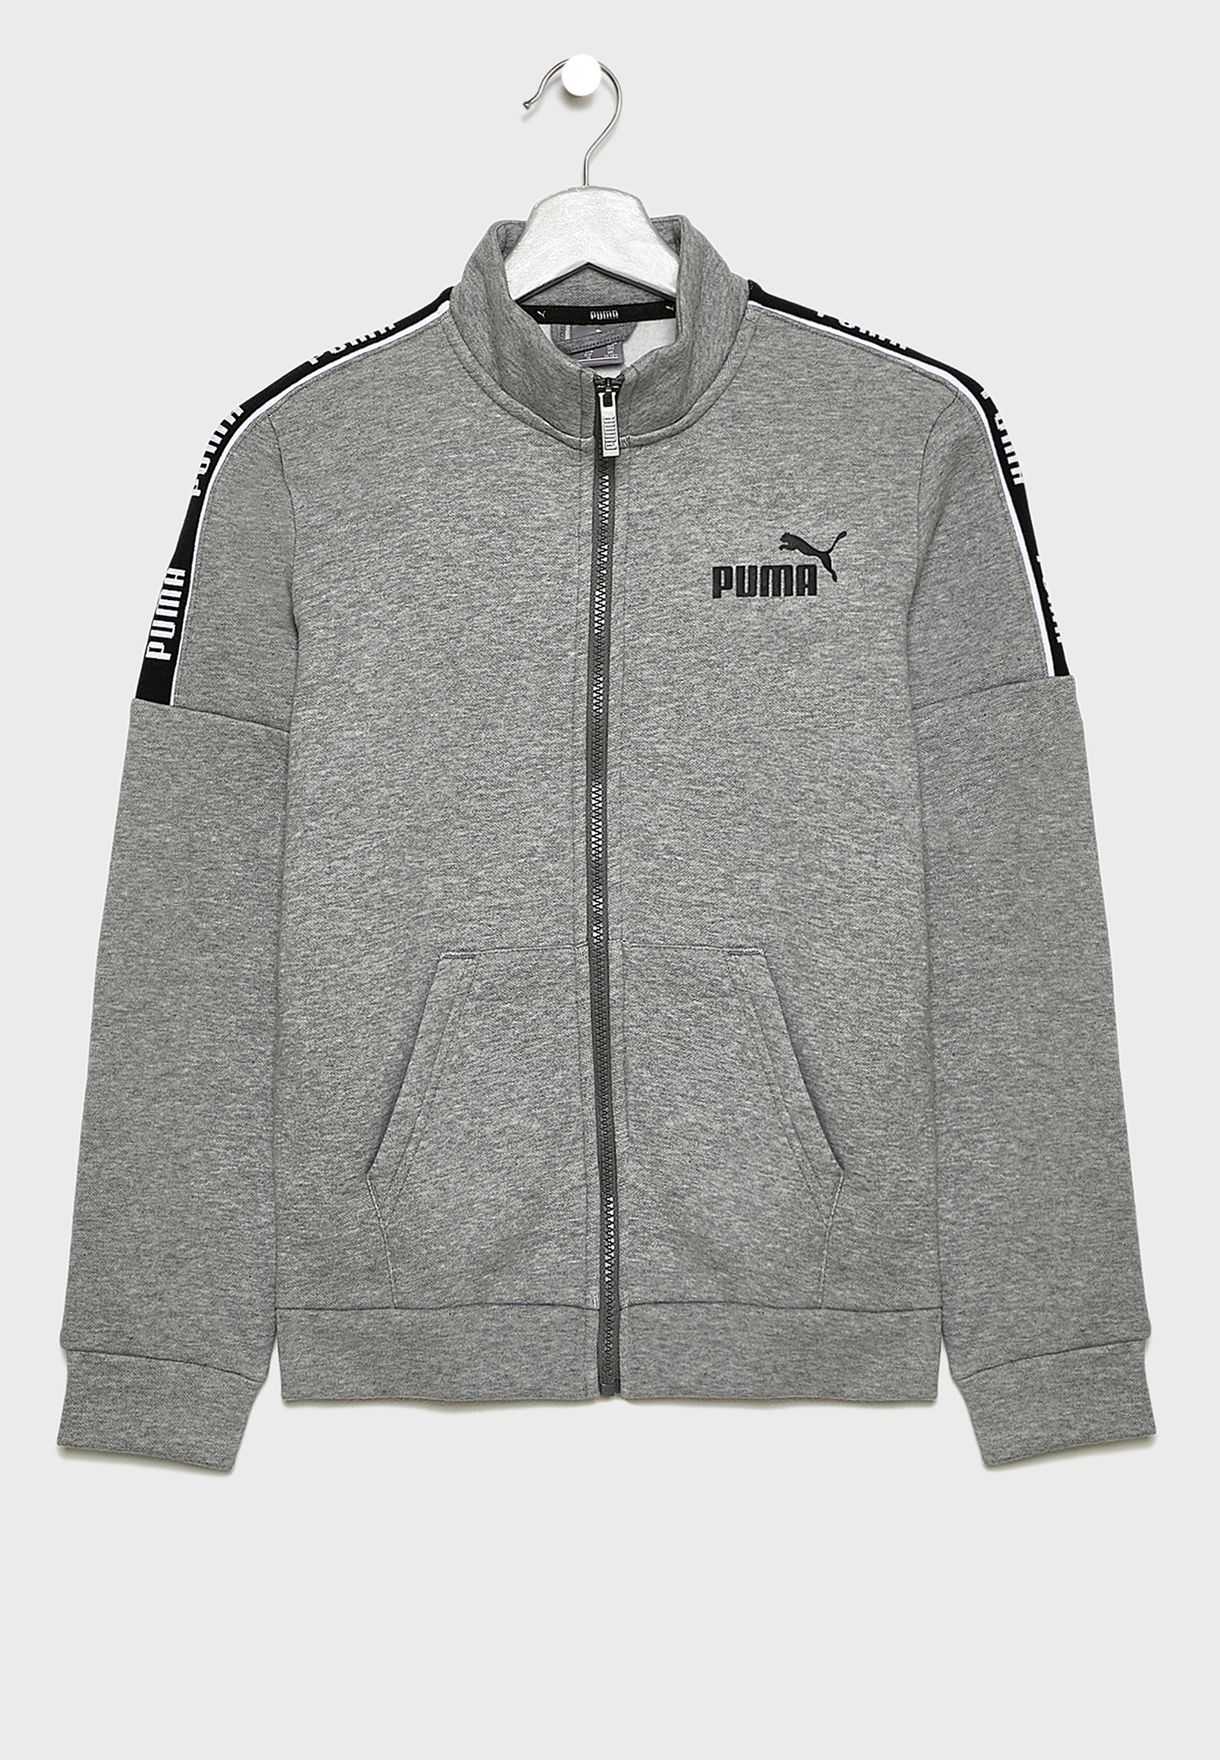 puma grey jacket